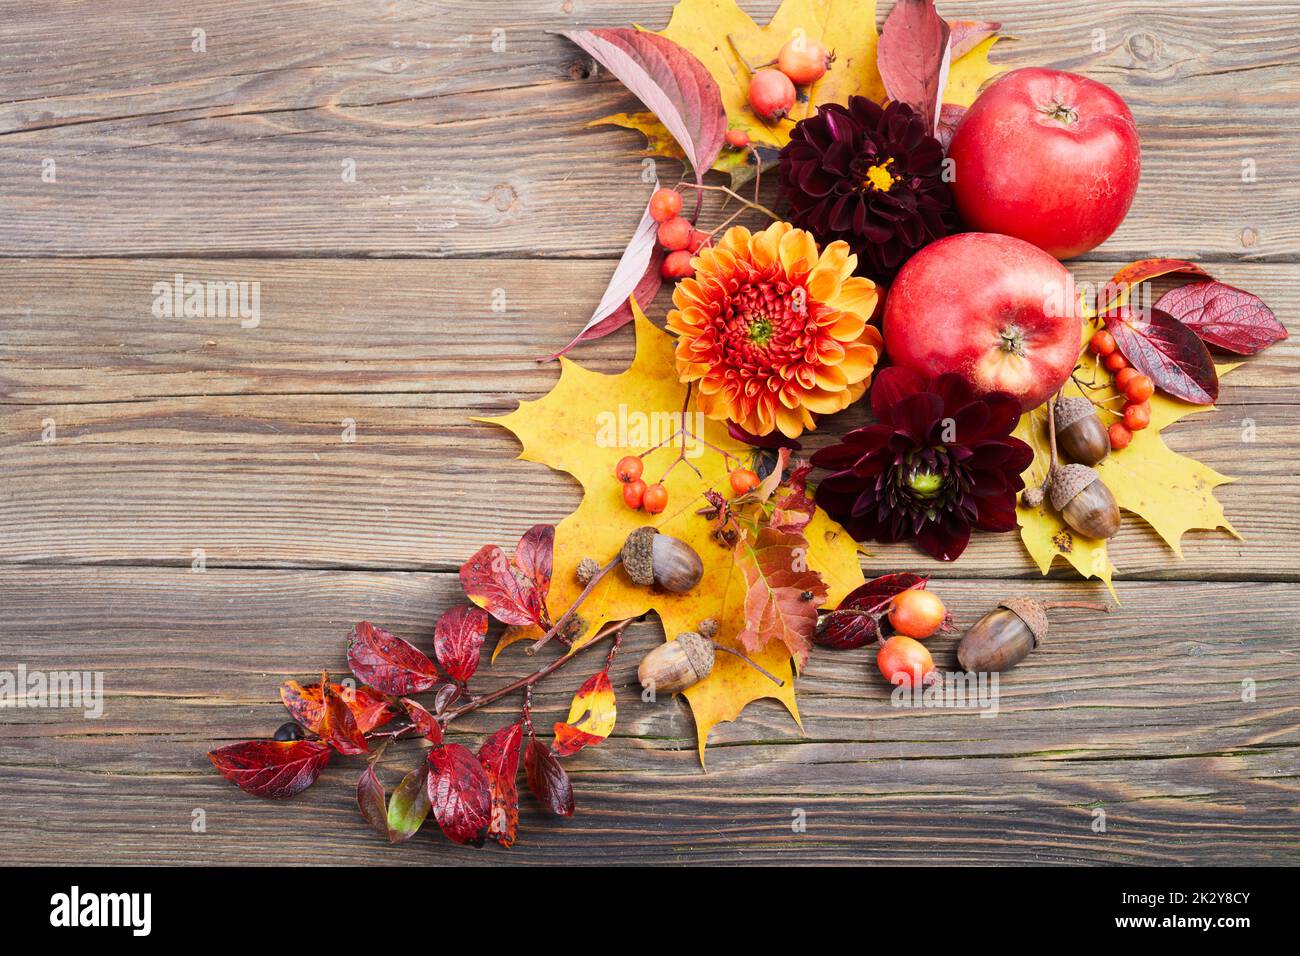 Composition de fruits colorés, baies, cônes. Vue de dessus sur fond en bois. Étales d'automne. Banque D'Images